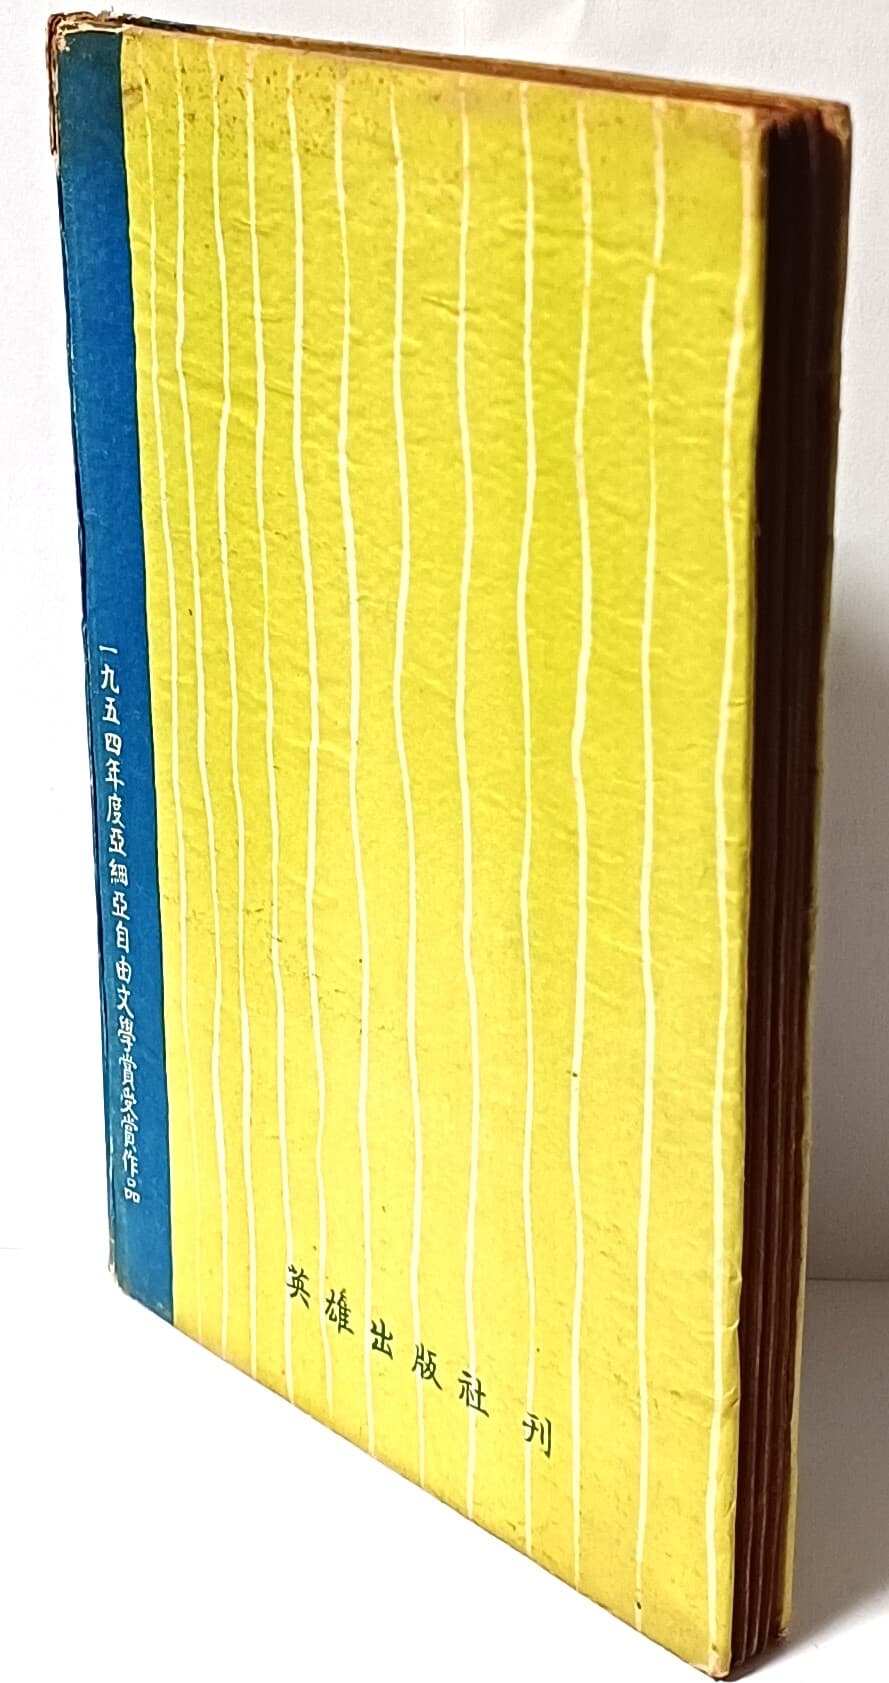 서정의 유형 -신동집 著- 현대시집 제4권-1957년 3판-125/185/10, 94쪽,하드커버-고서,희귀본-